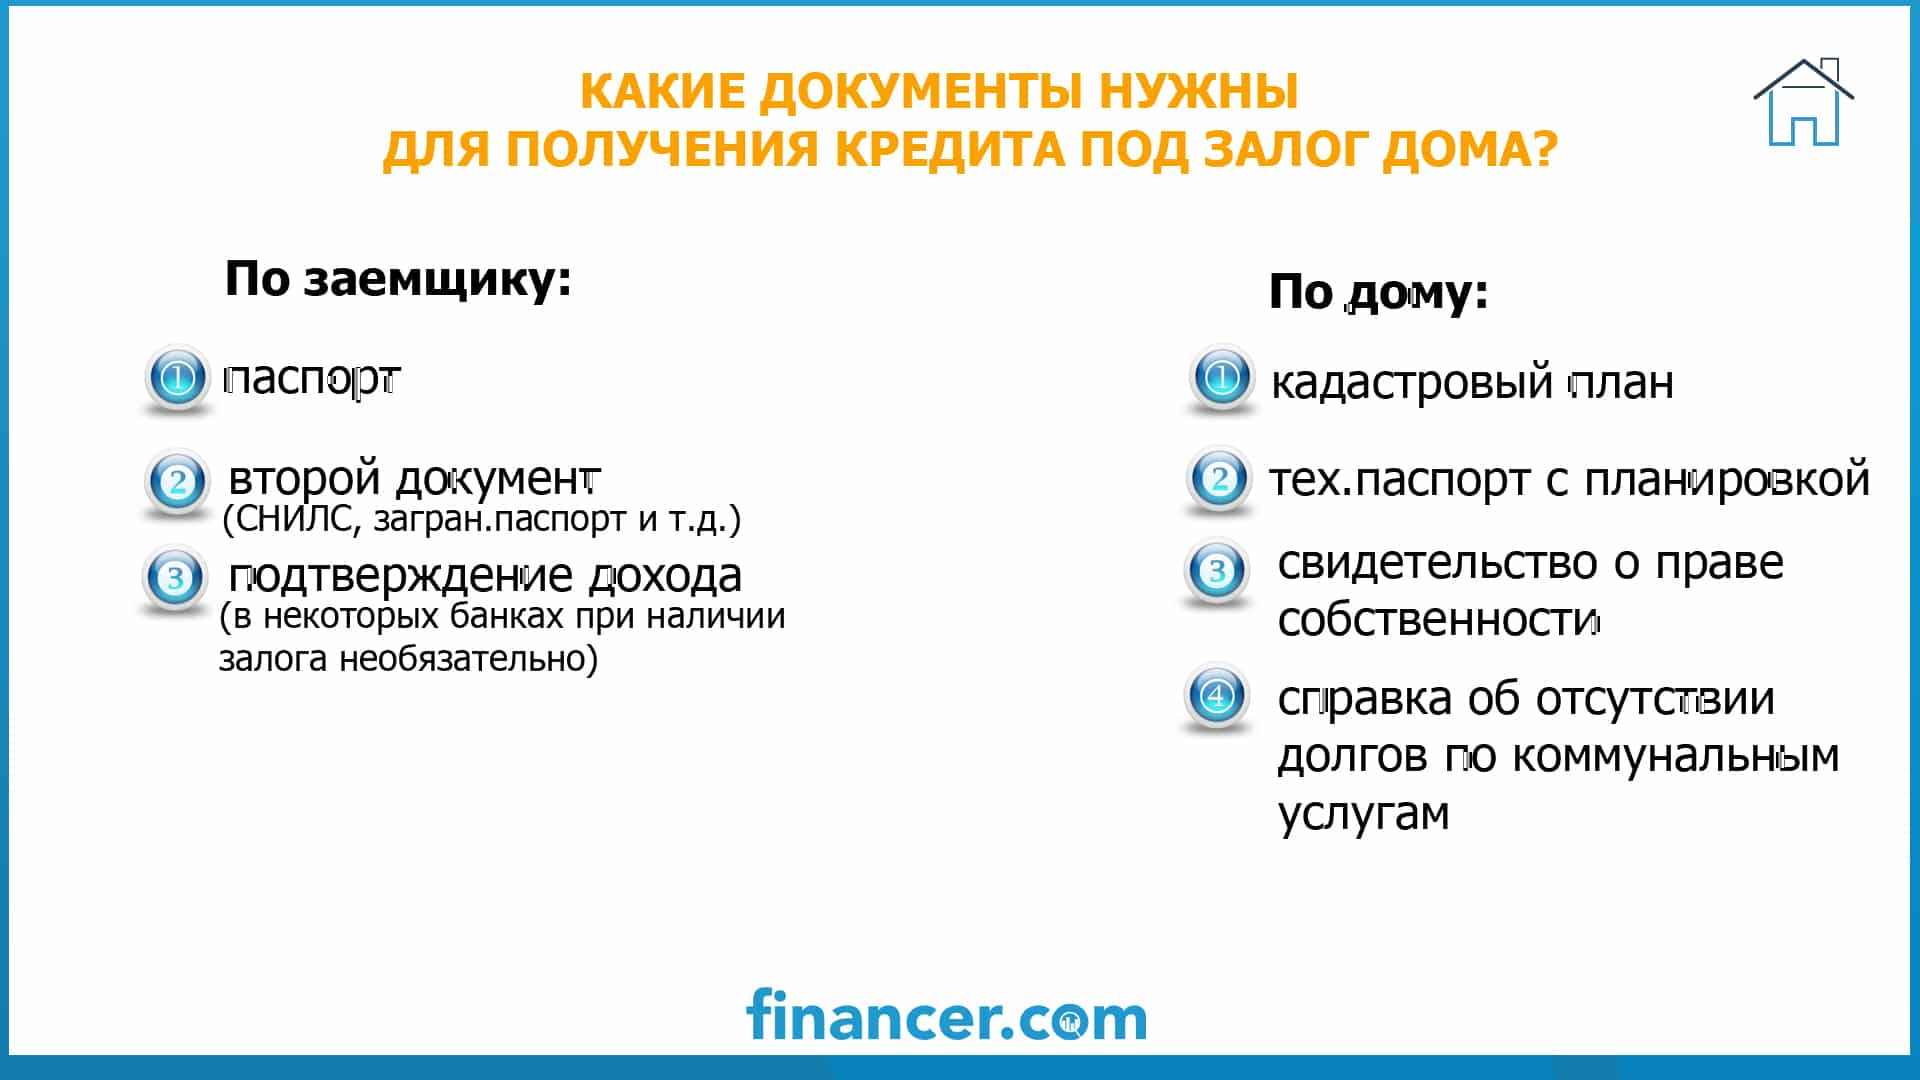 Как можно взять кредит под залог дома в россии машина в кредит в автосалоне в ростове